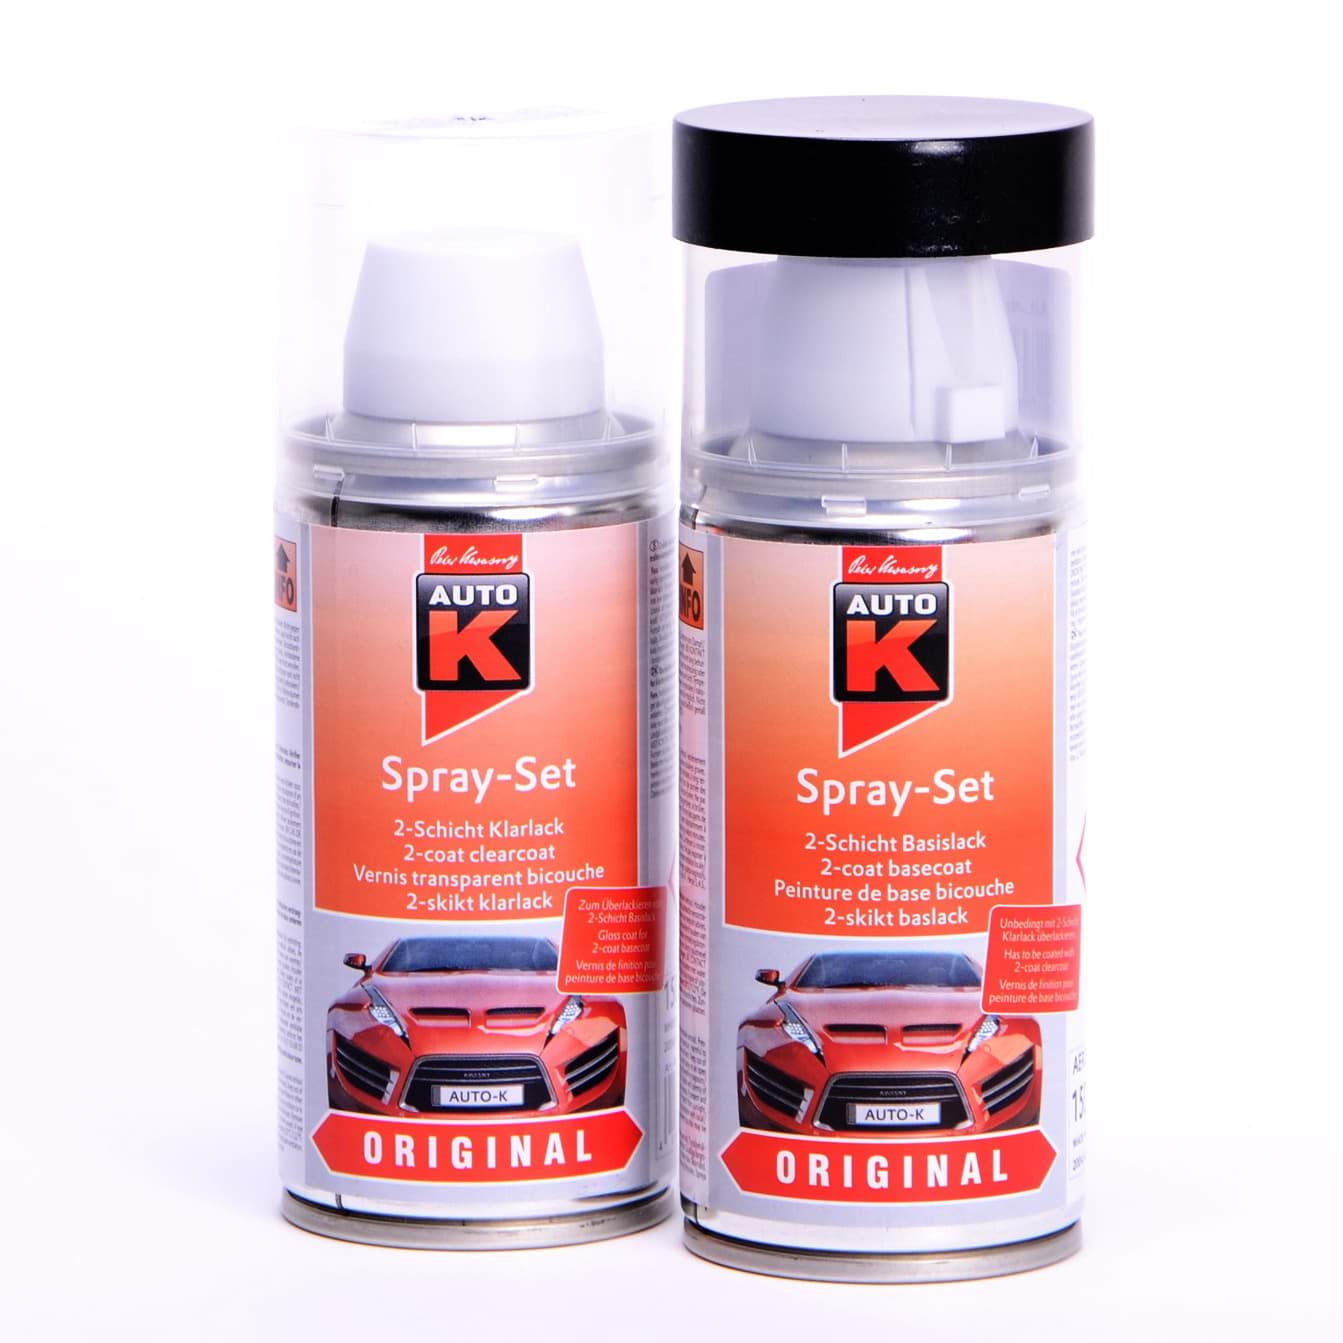 Auto-K Spray-Set Autolack für Renault 608 Gris Tungstene met 43359 resmi